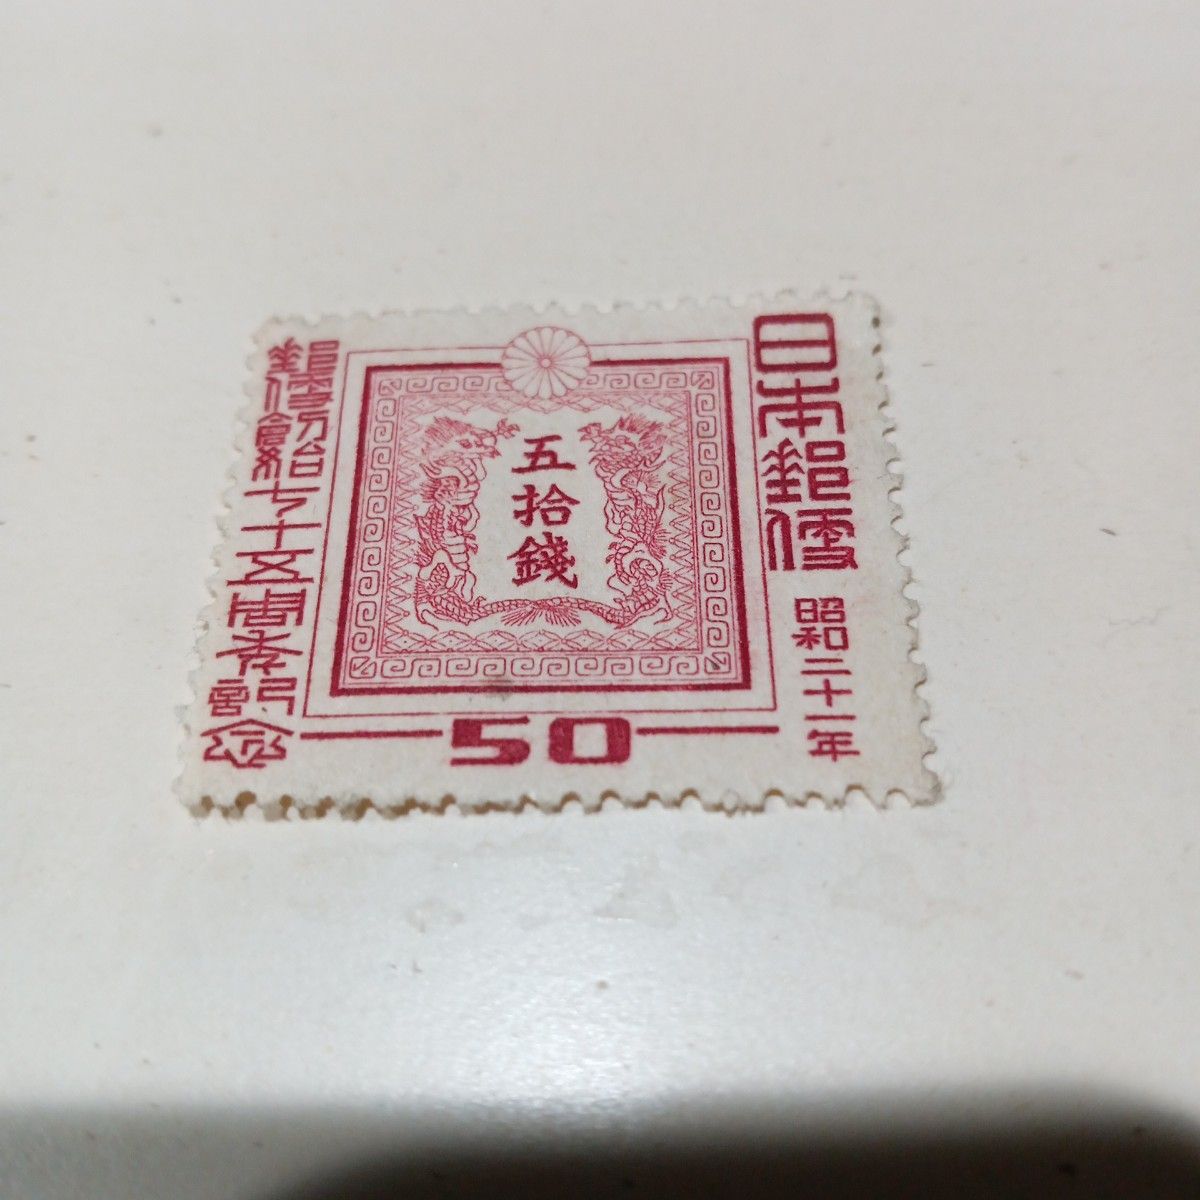 郵便創始七十五周年記念 15銭・ 50銭 切手